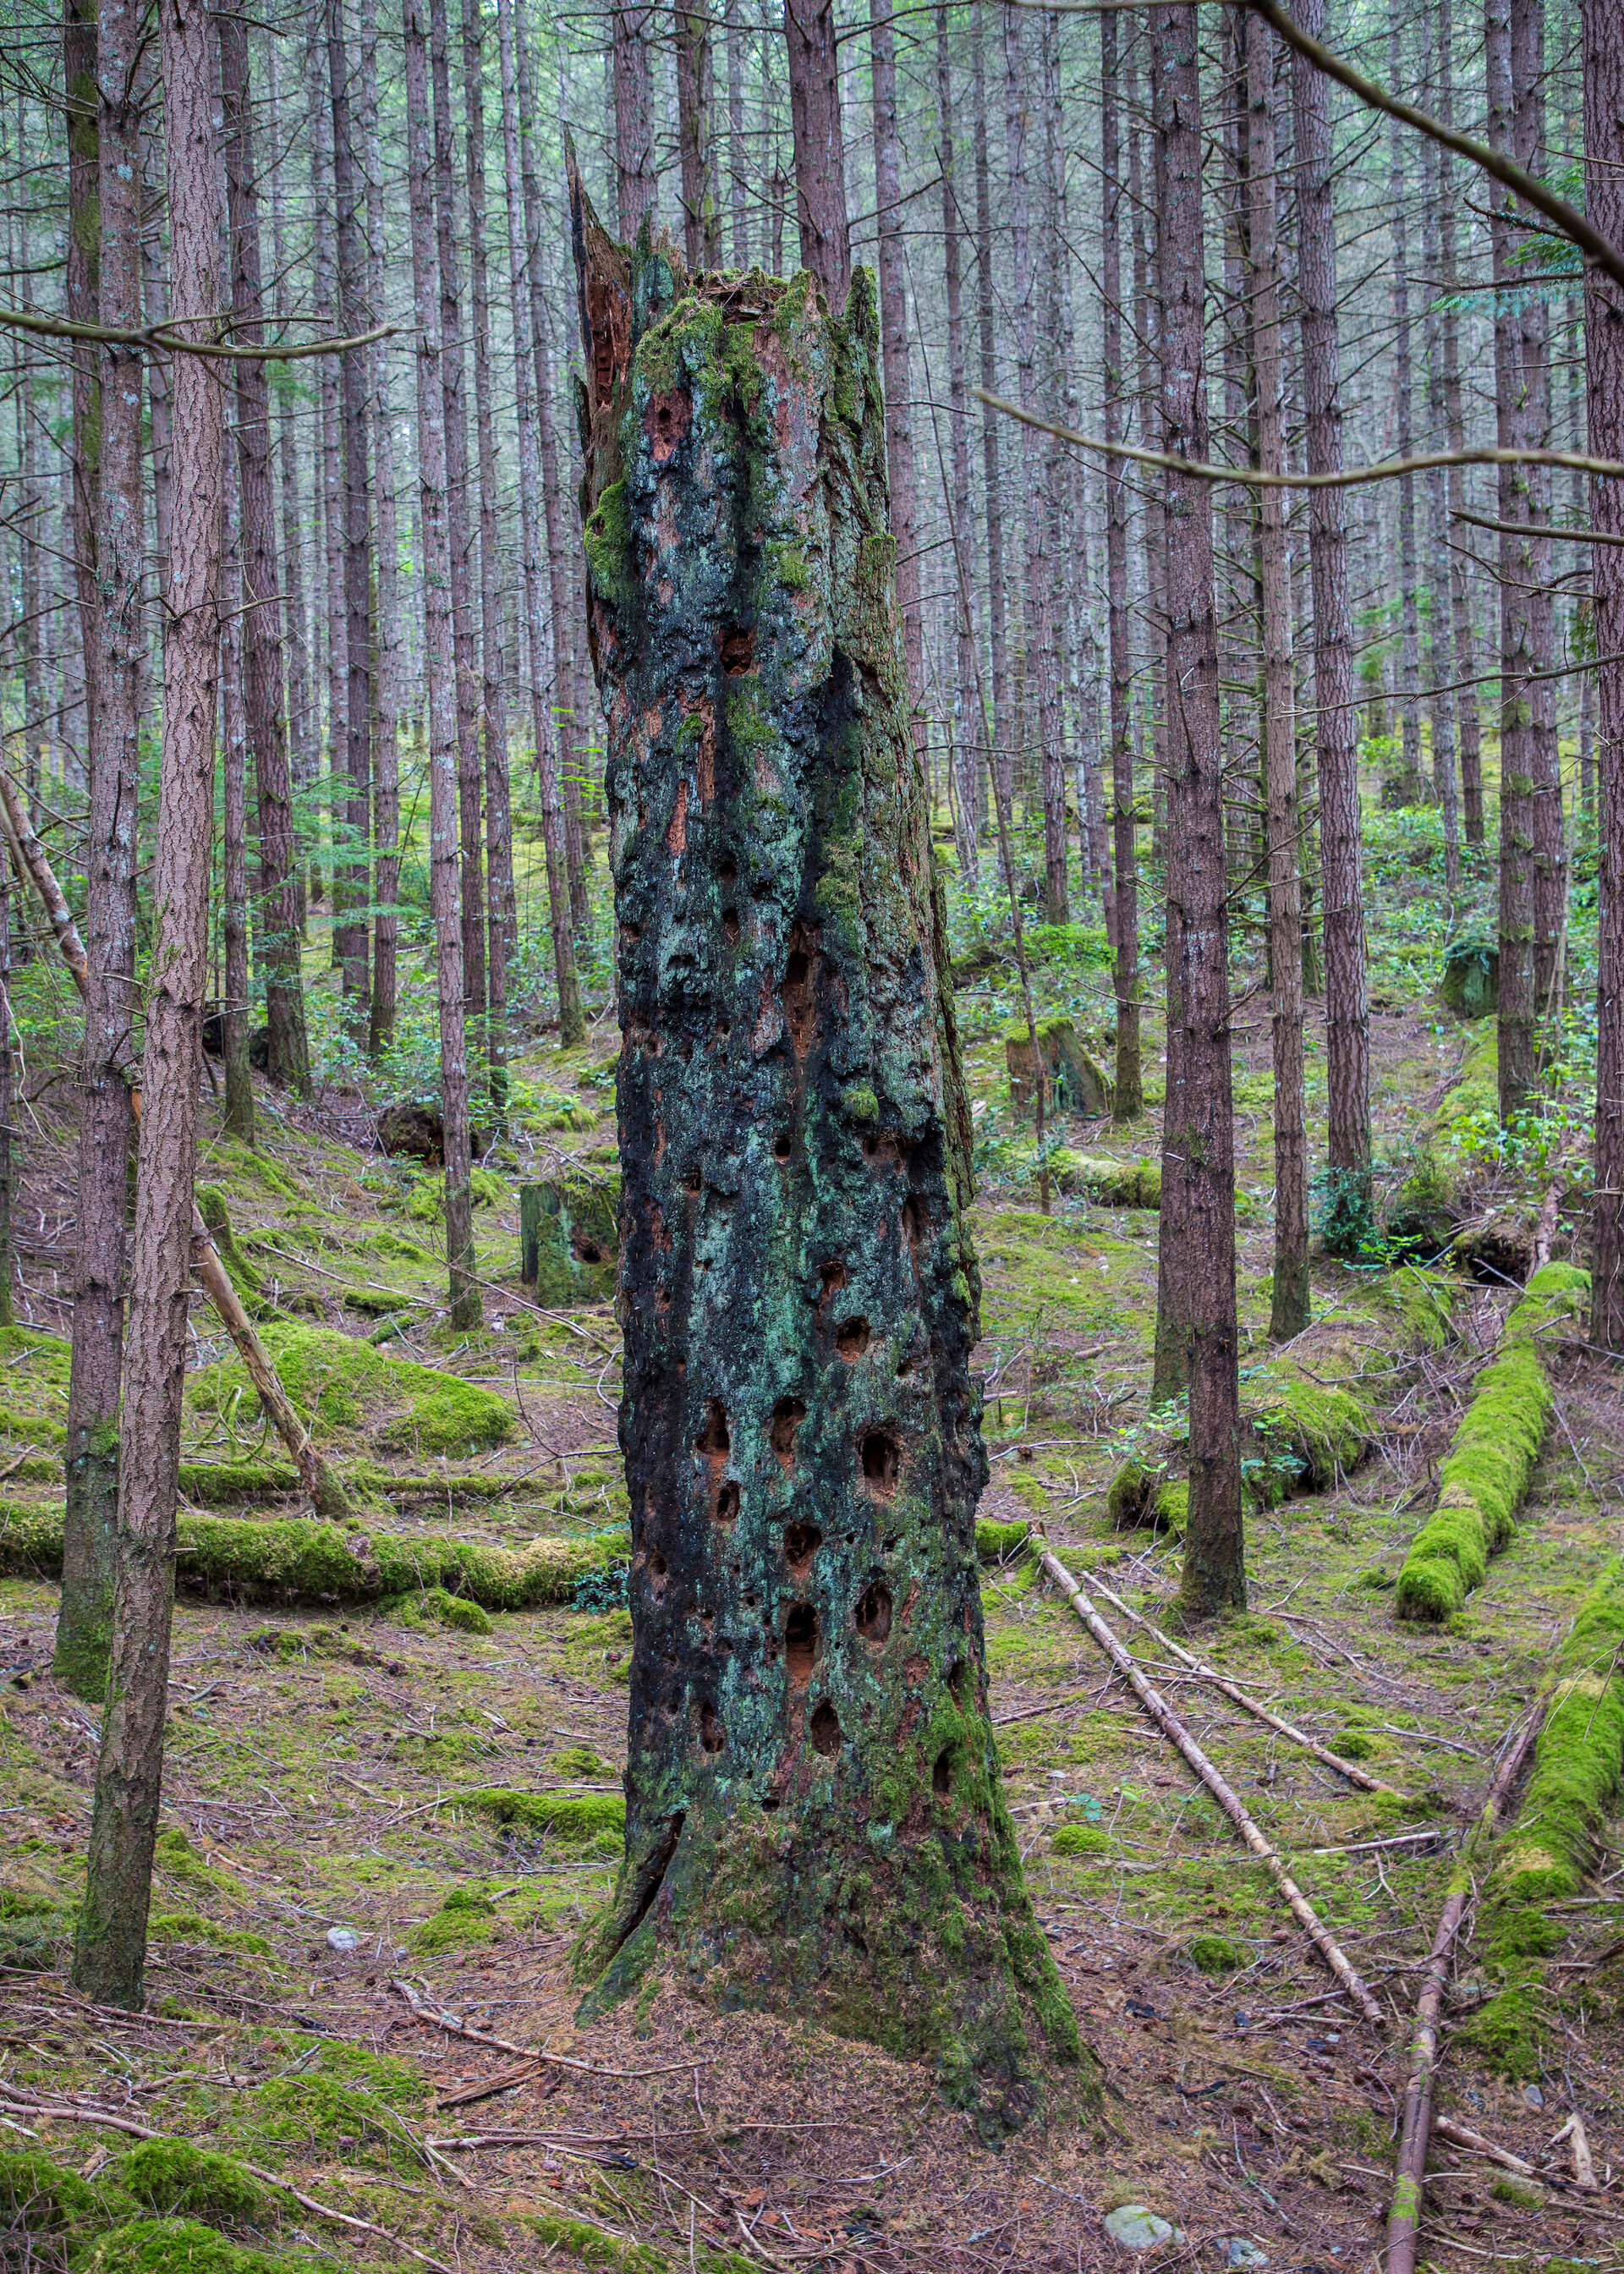  A very cool, burn tree stump. So many woodpecker holes! 